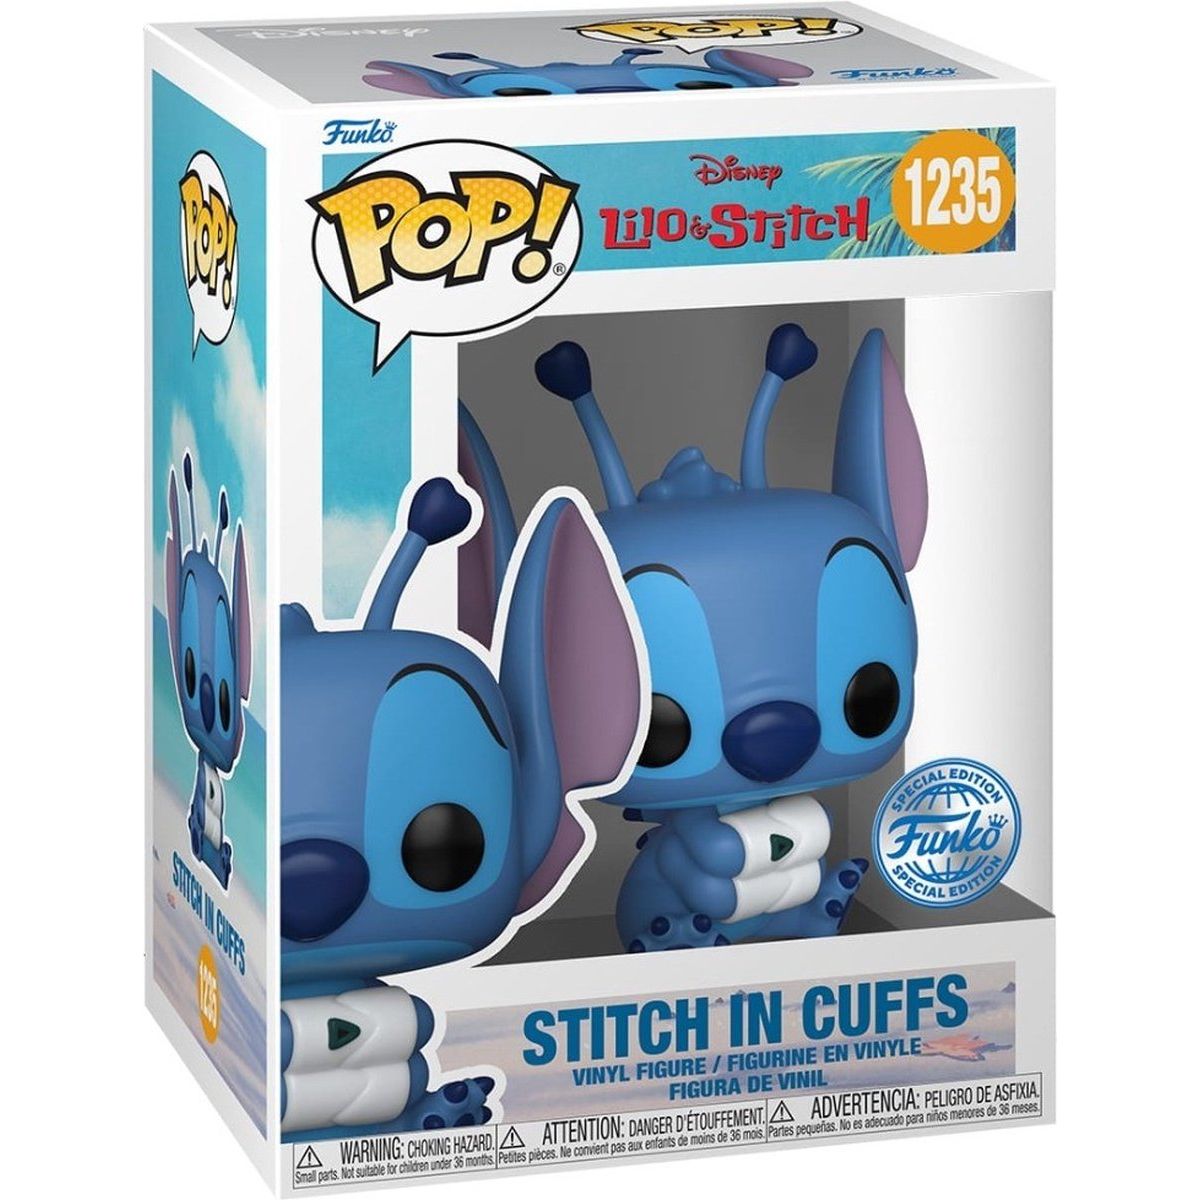 Disney - Stitch in Cuffs - 1235